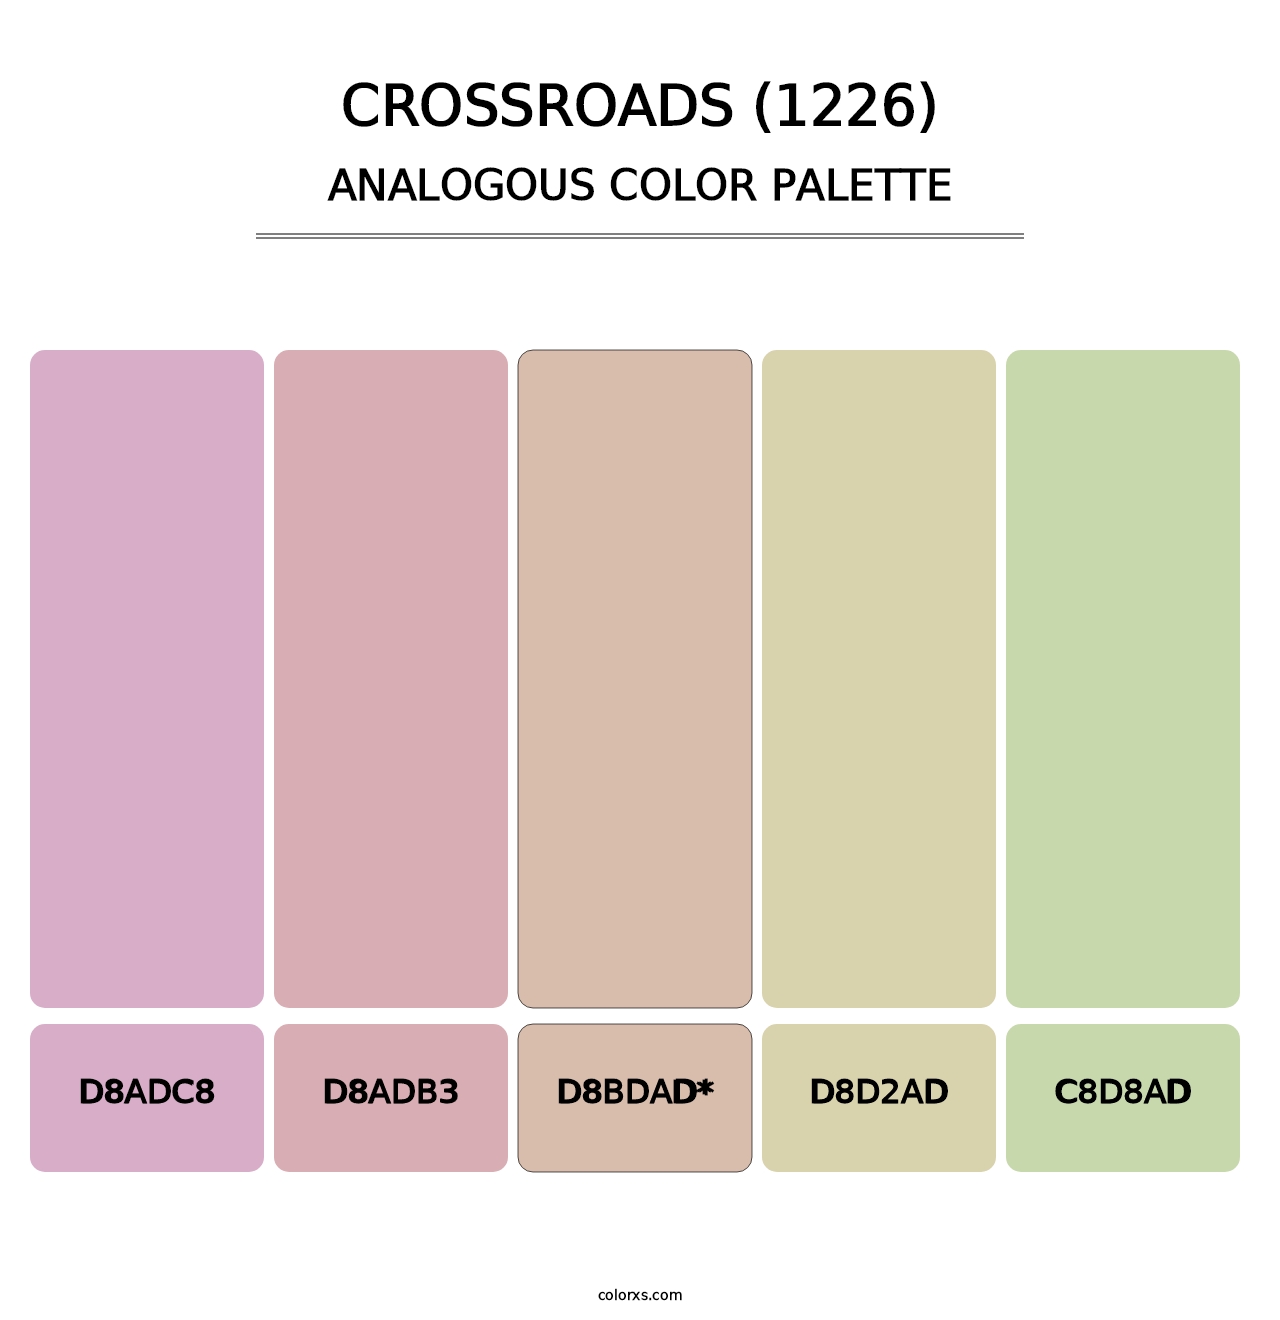 Crossroads (1226) - Analogous Color Palette